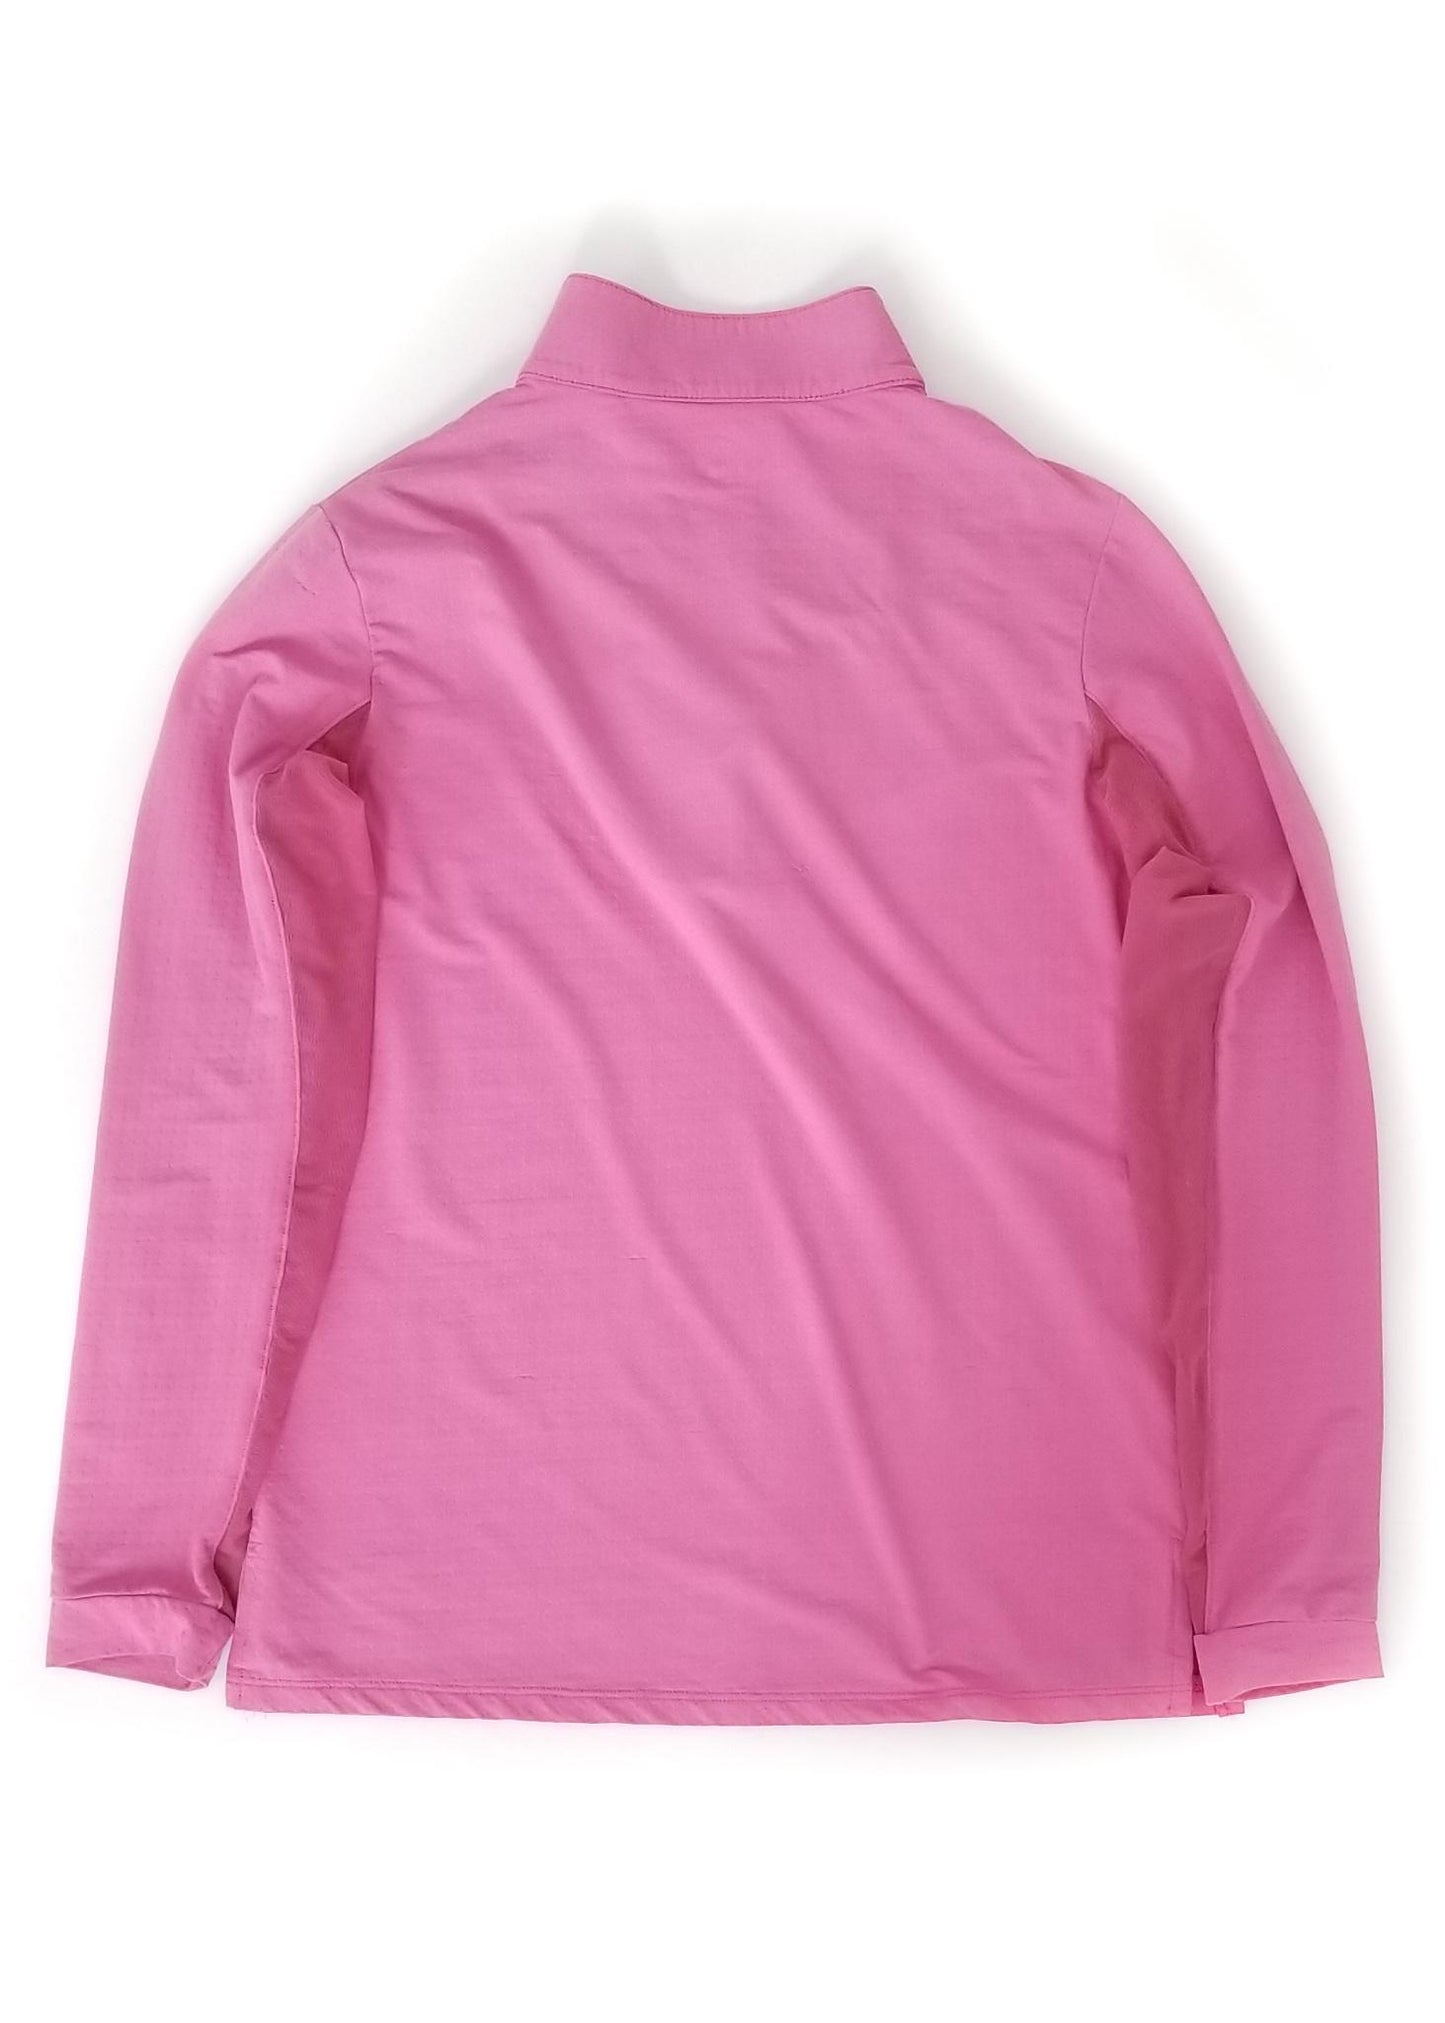 EIS Long Sleeve Sun Shirt - Pink - Women's Small